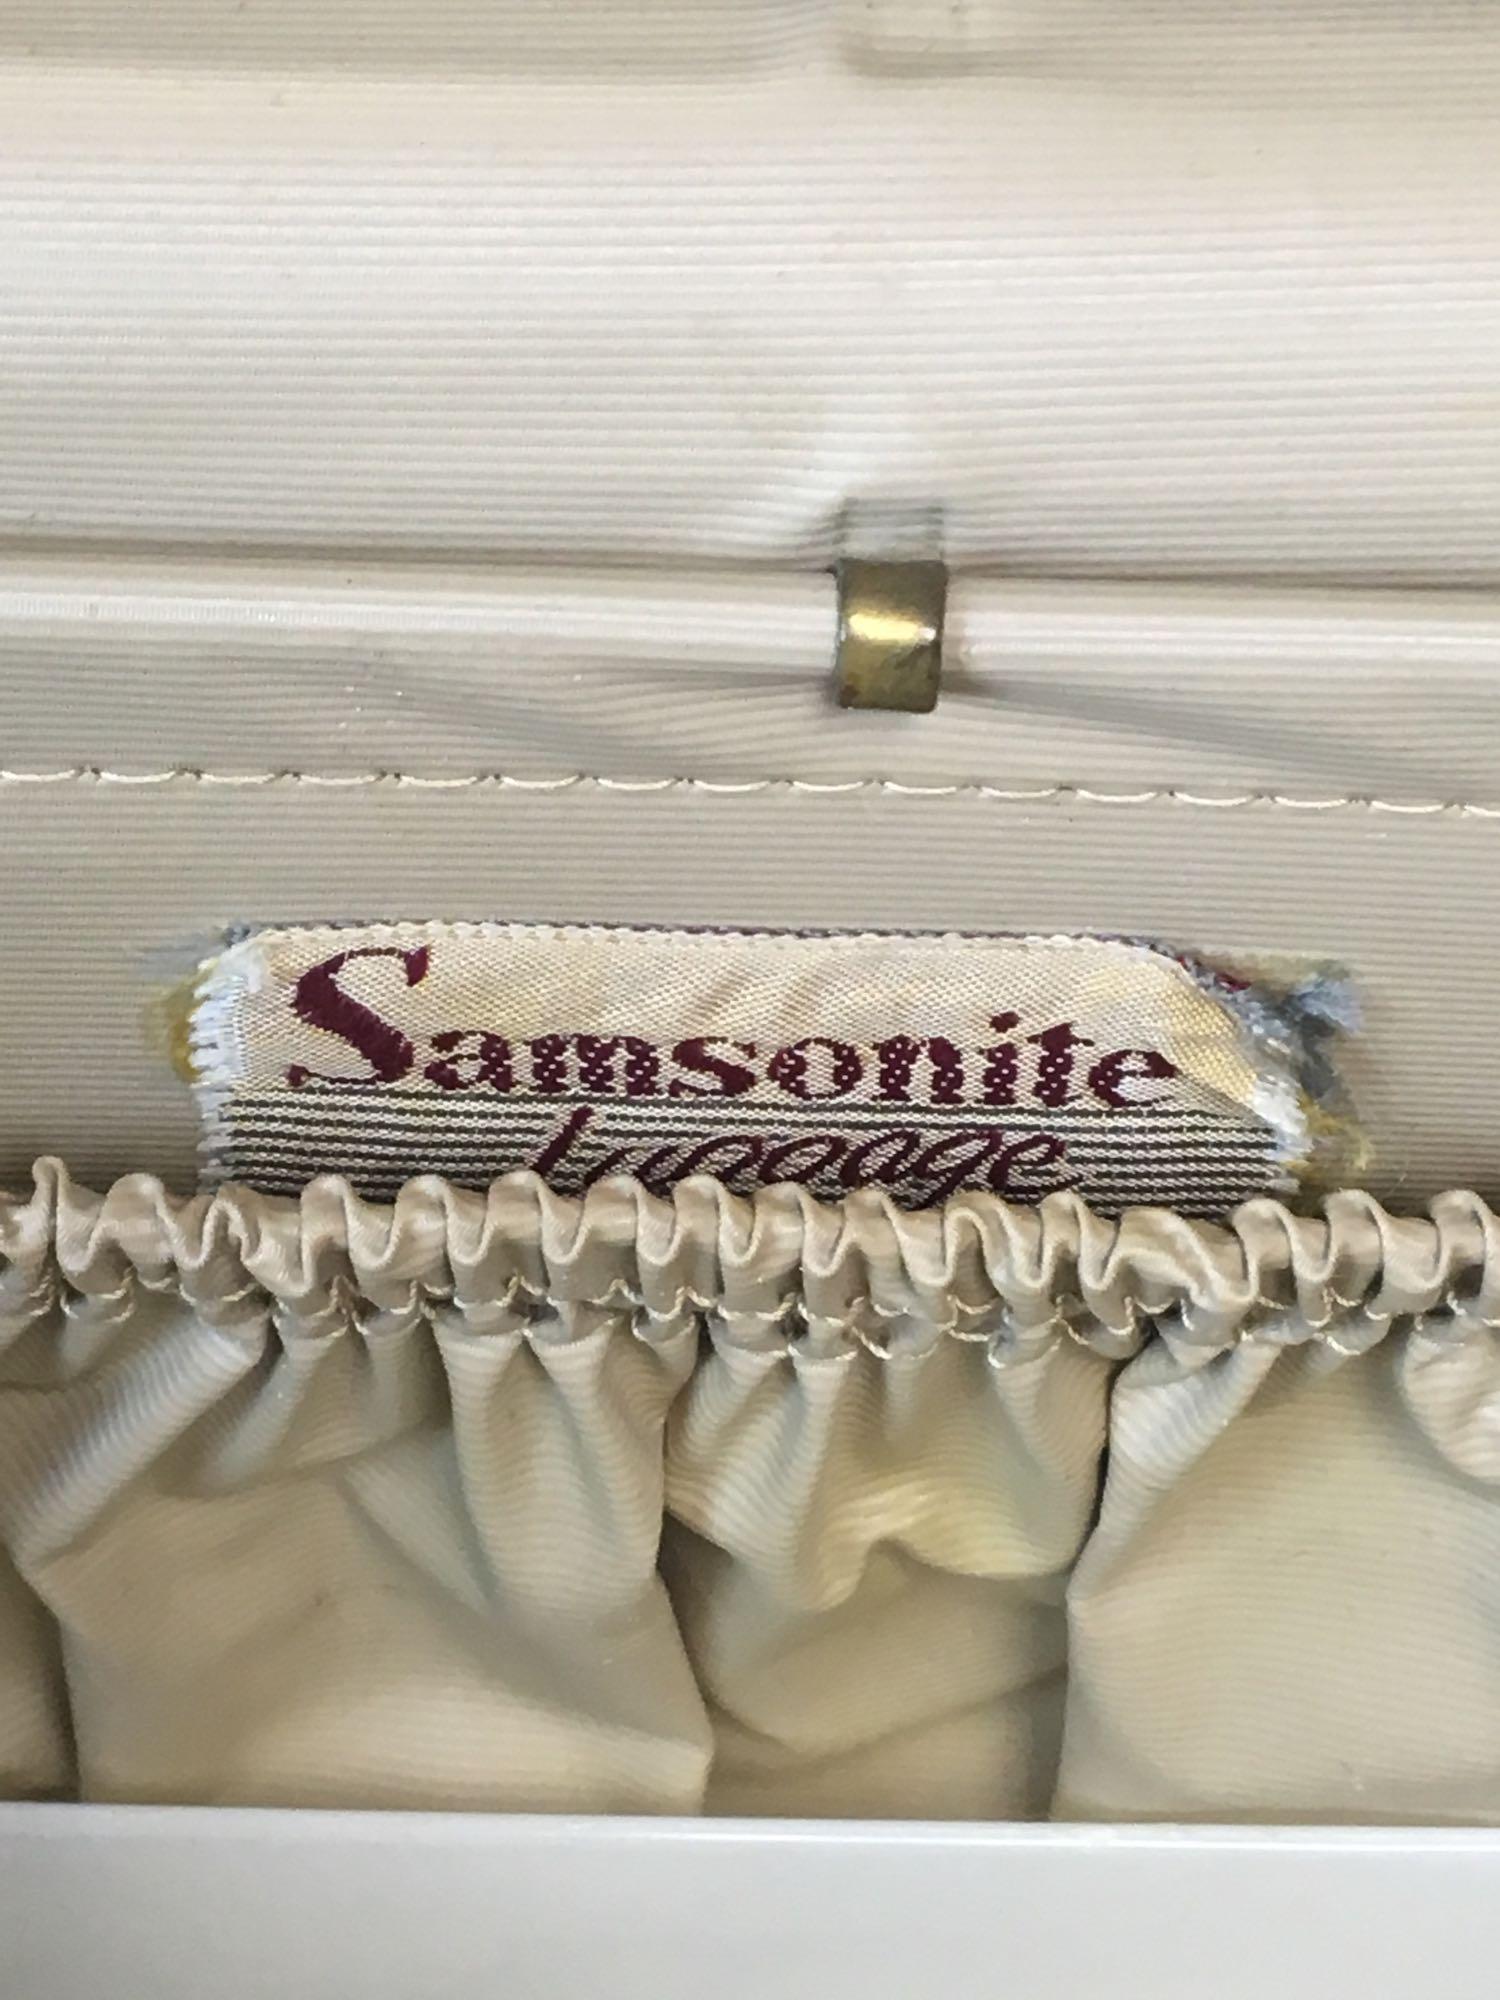 Group of 2 Vintage Cream and Beige Marbled Samsonite Streamlite Luggage